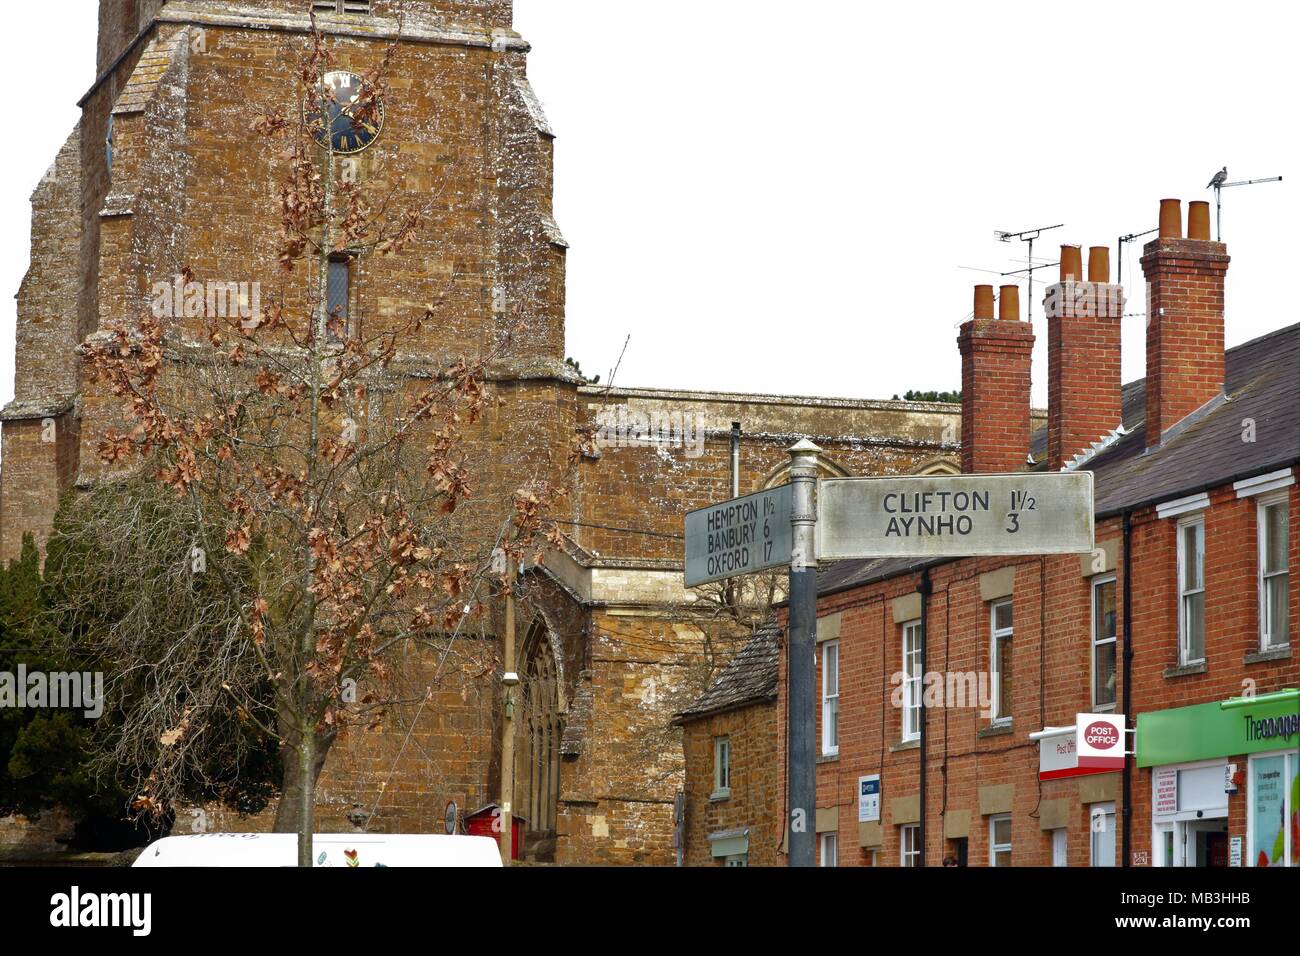 Deddington Stadtzentrum, Oxfordshire, UK, schmutzige Schild für Hemton, Banbury, Oxford, Clifton und Ayho sowie Deddington Kirche mit Uhr Stockfoto